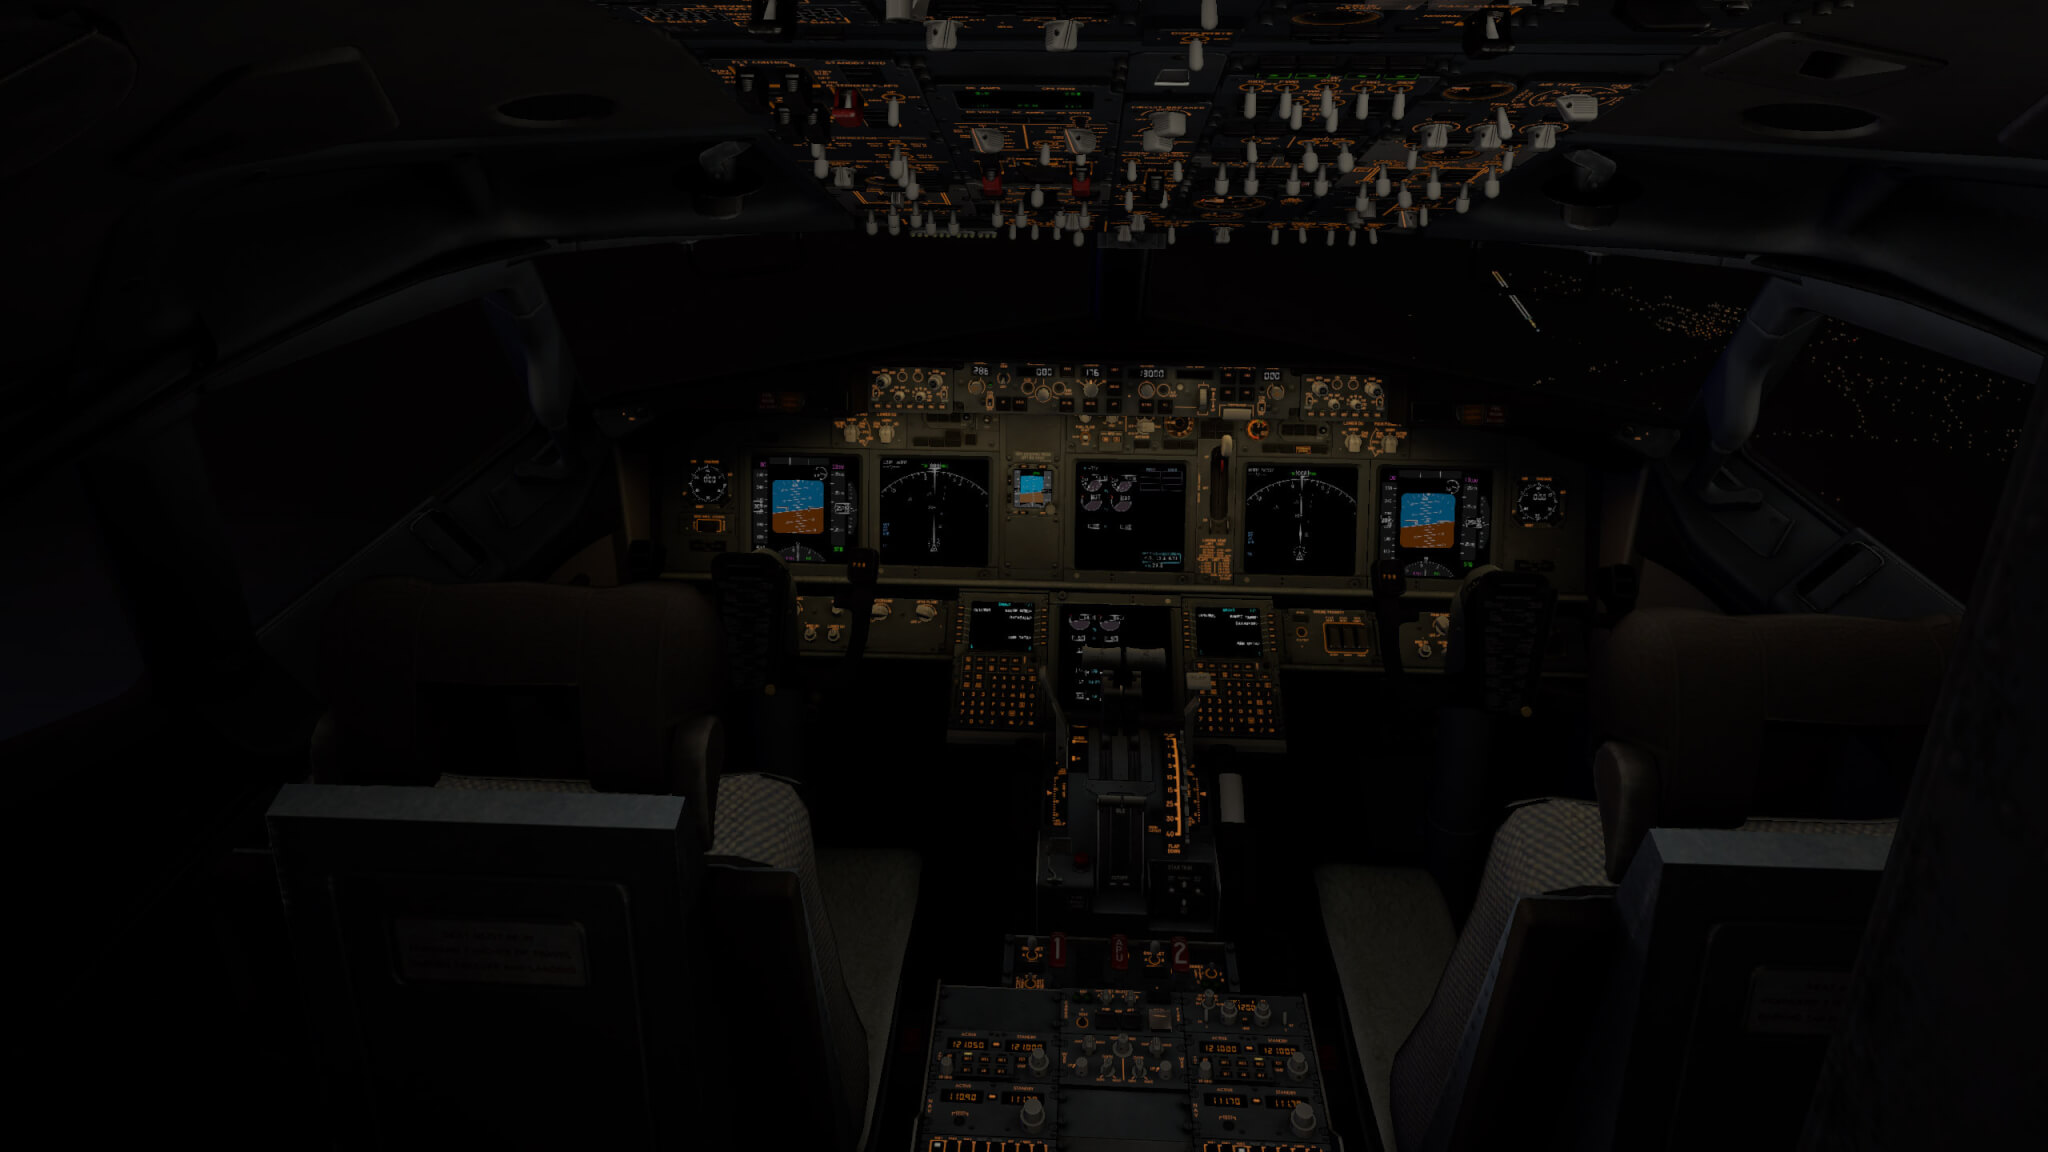 v11_737_cockpit_at_night.jpg